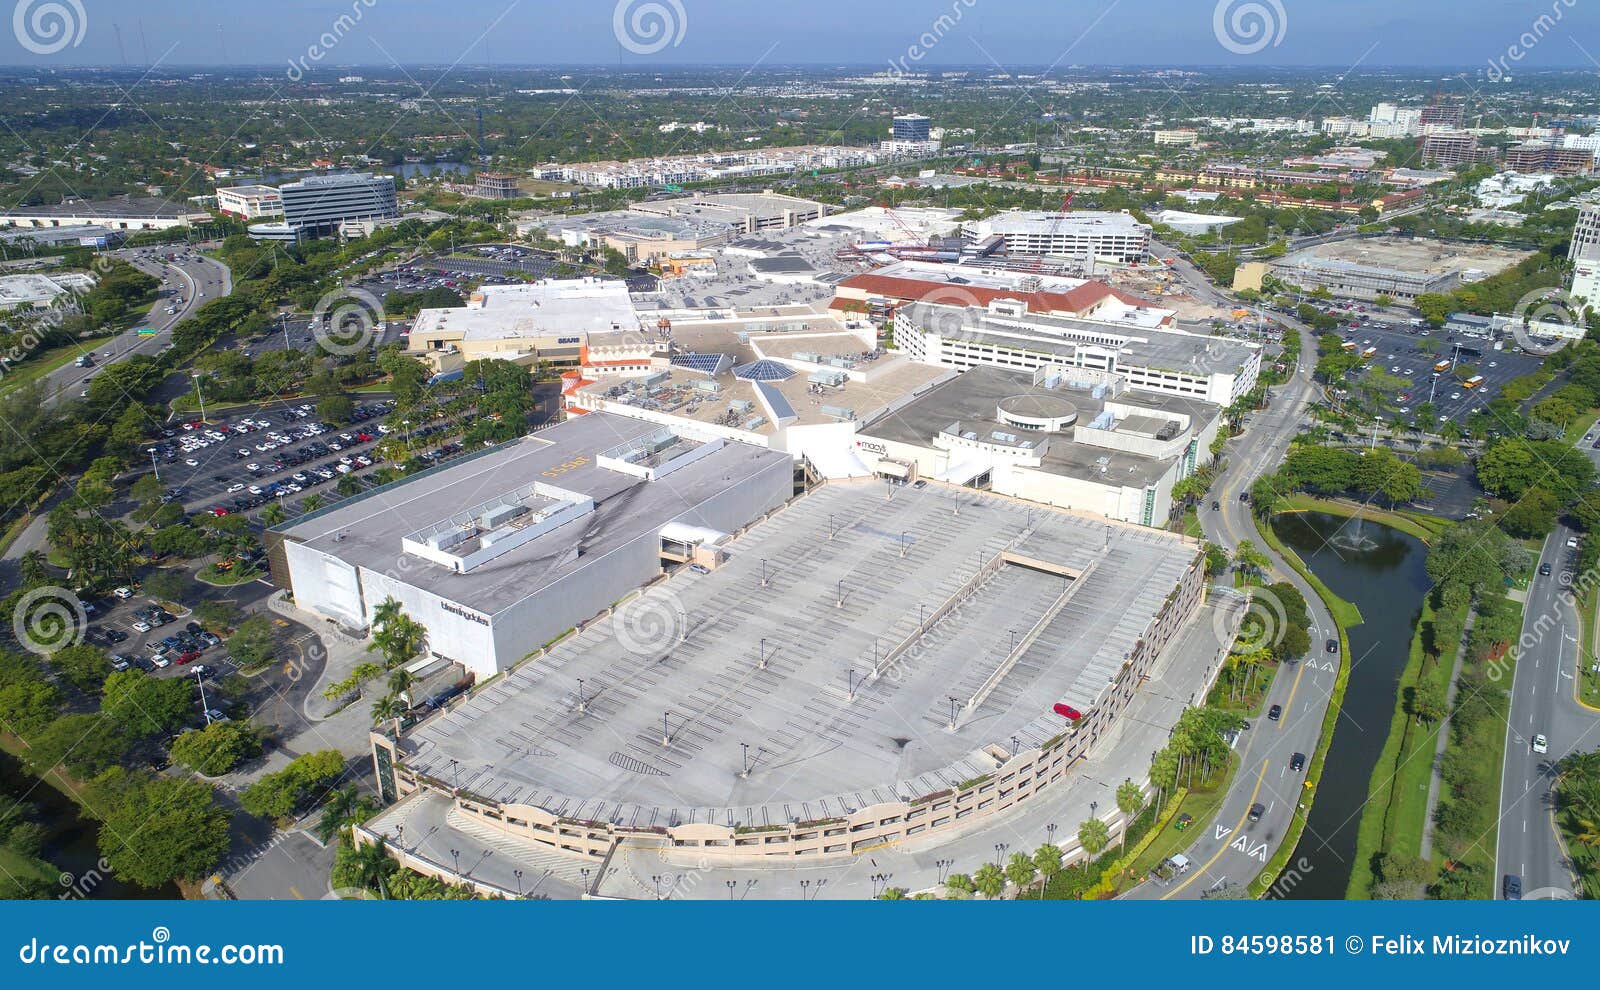 Aventura Mall - Super regional mall in Miami, Florida, USA 